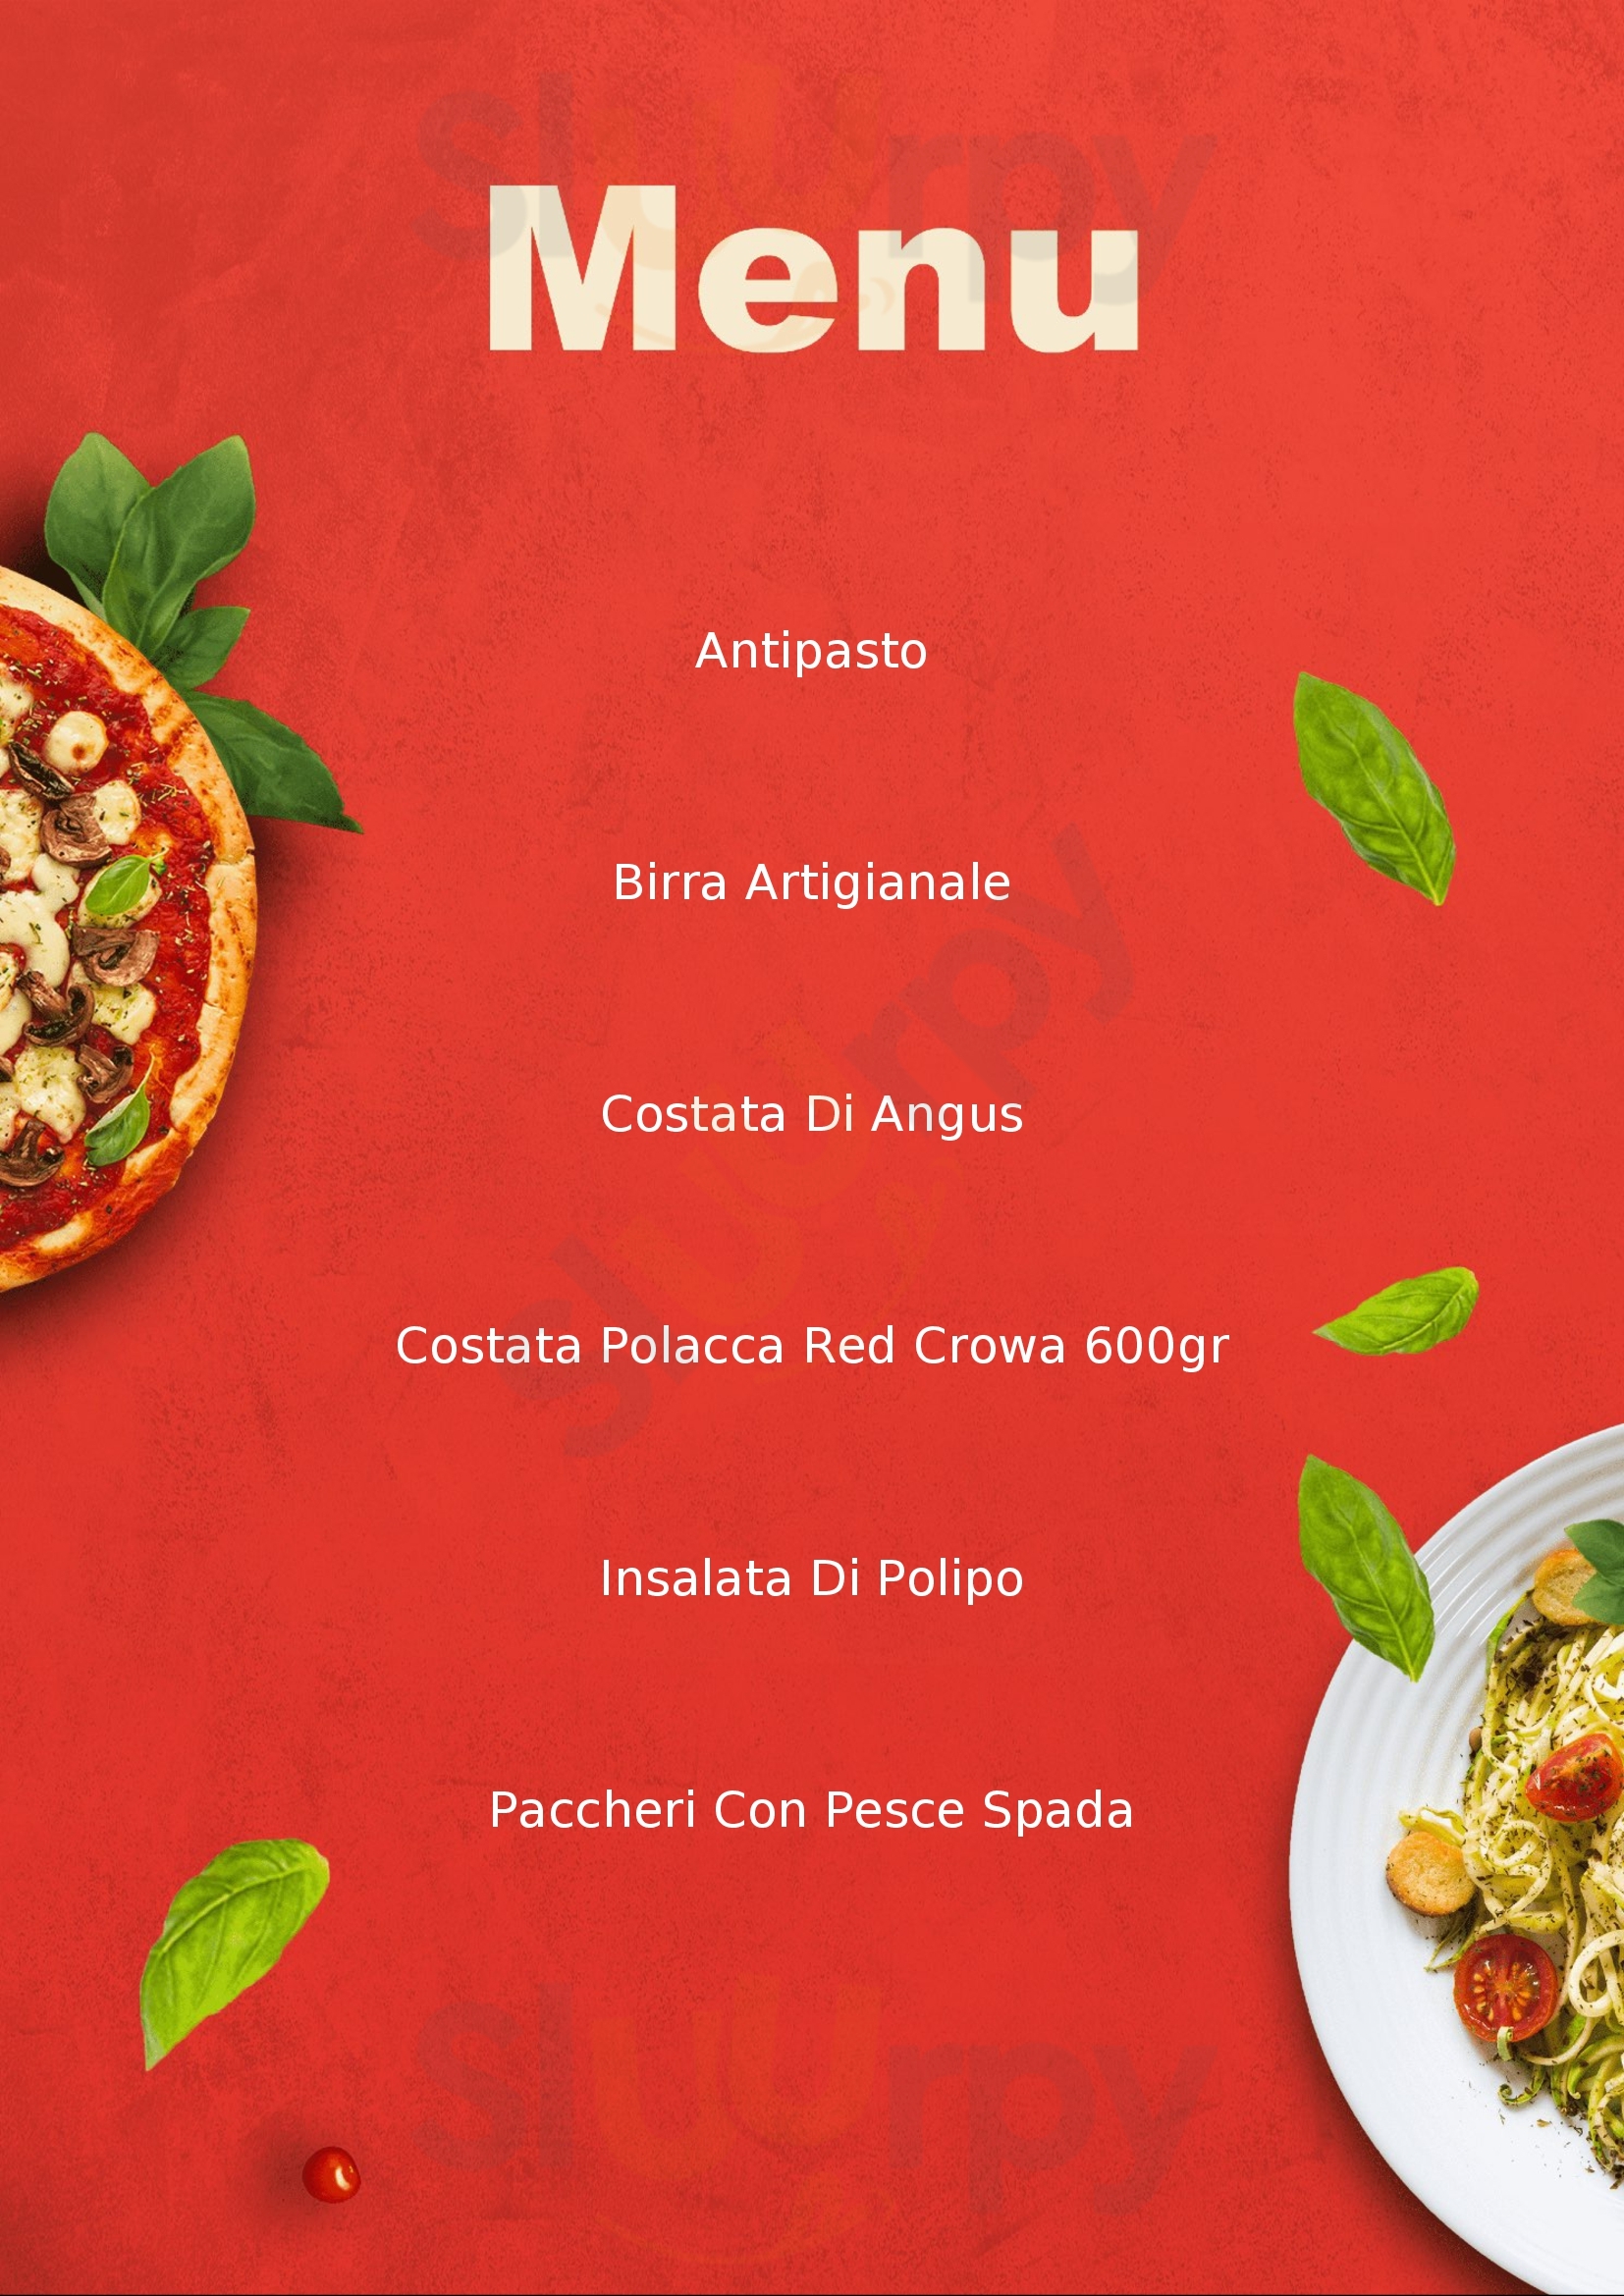 Bandus pizza e braci Levico Terme menù 1 pagina